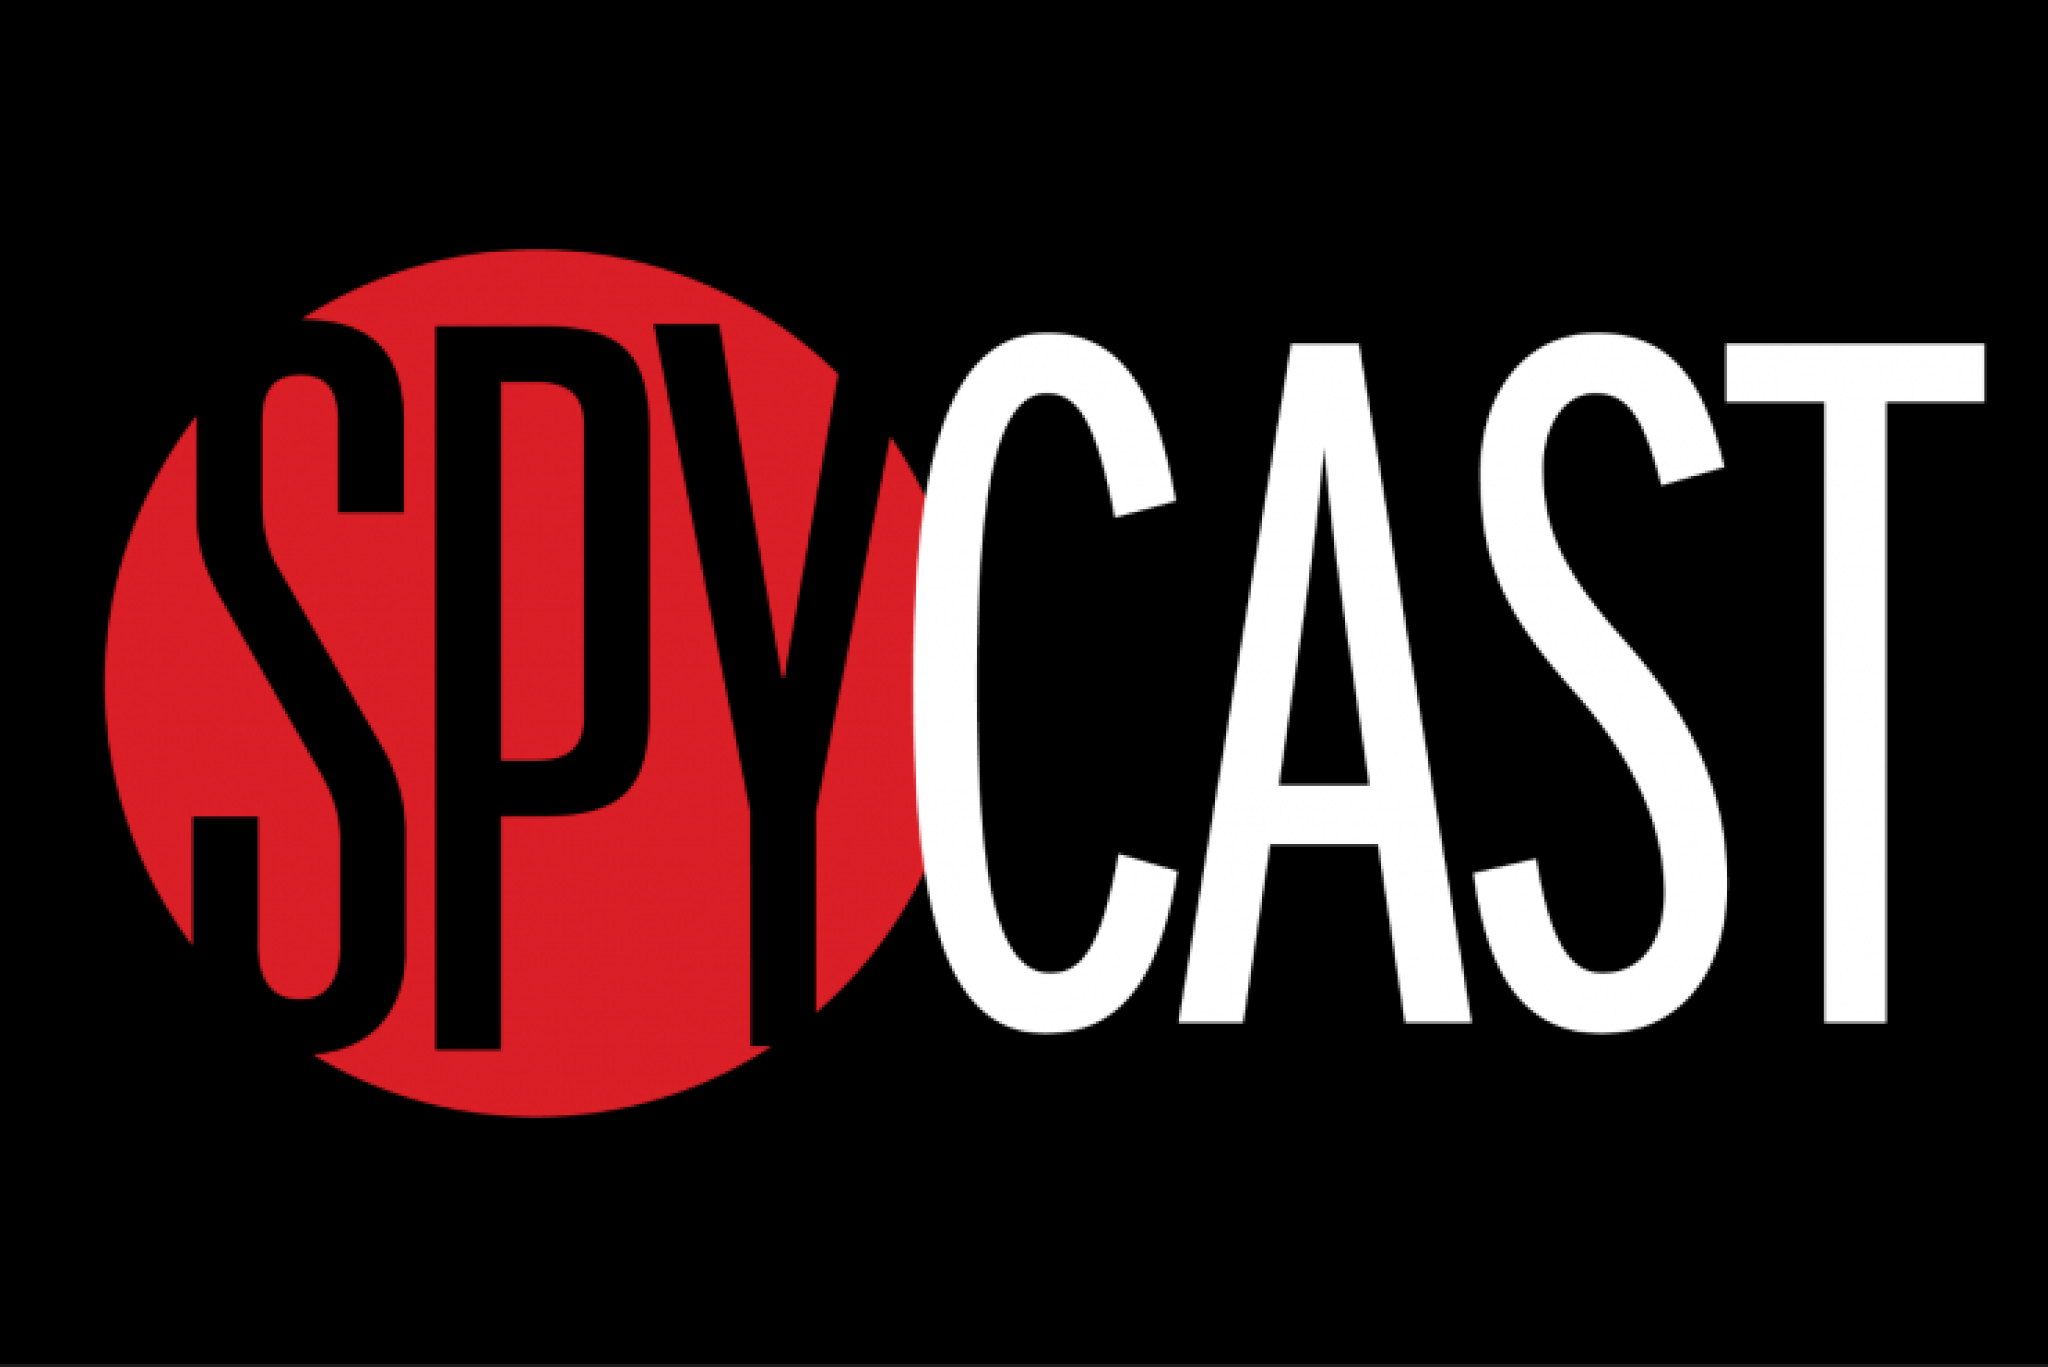 SpyCast